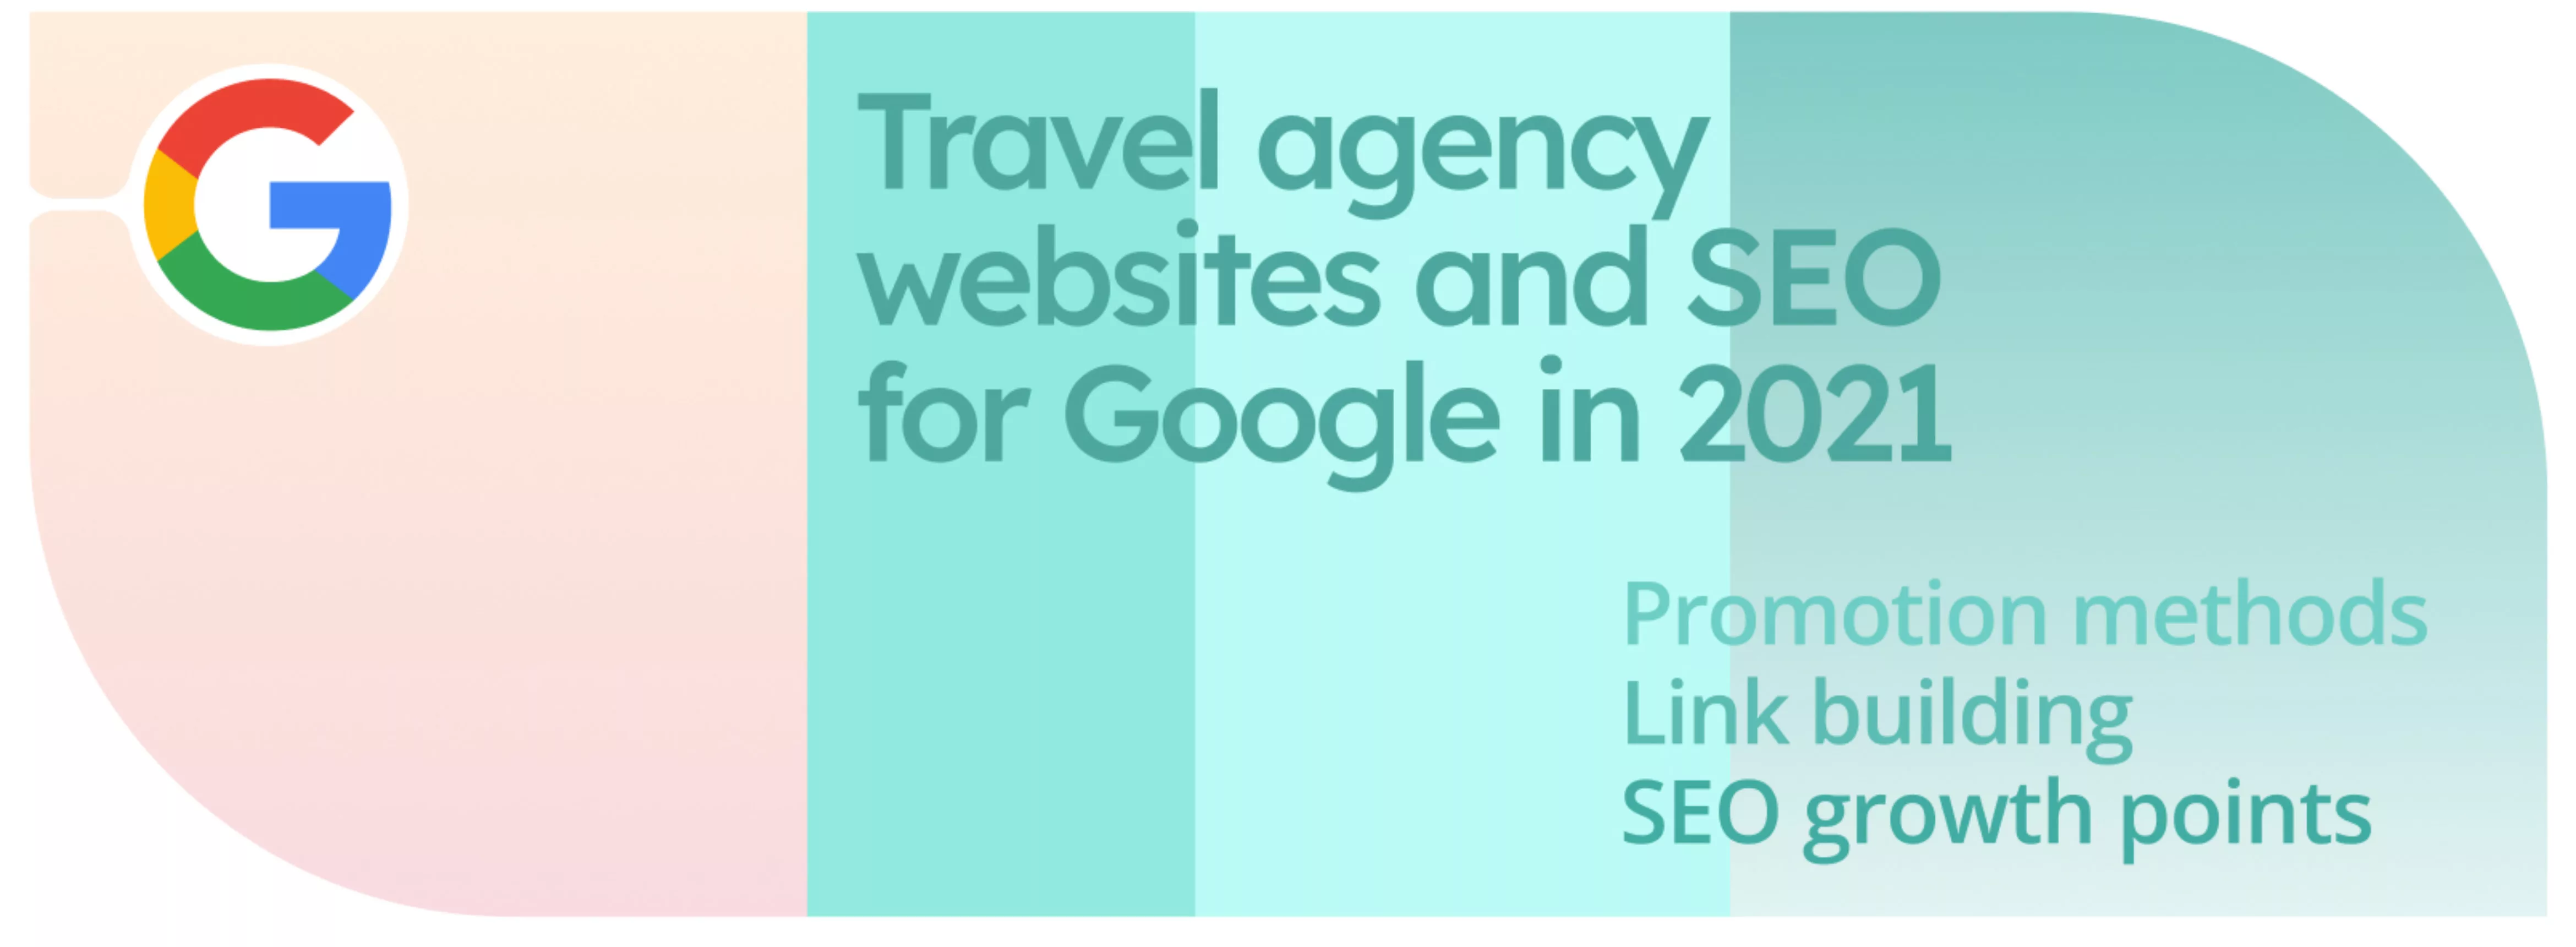 Сайты туристических агентств и SEO для Google в 2021 году